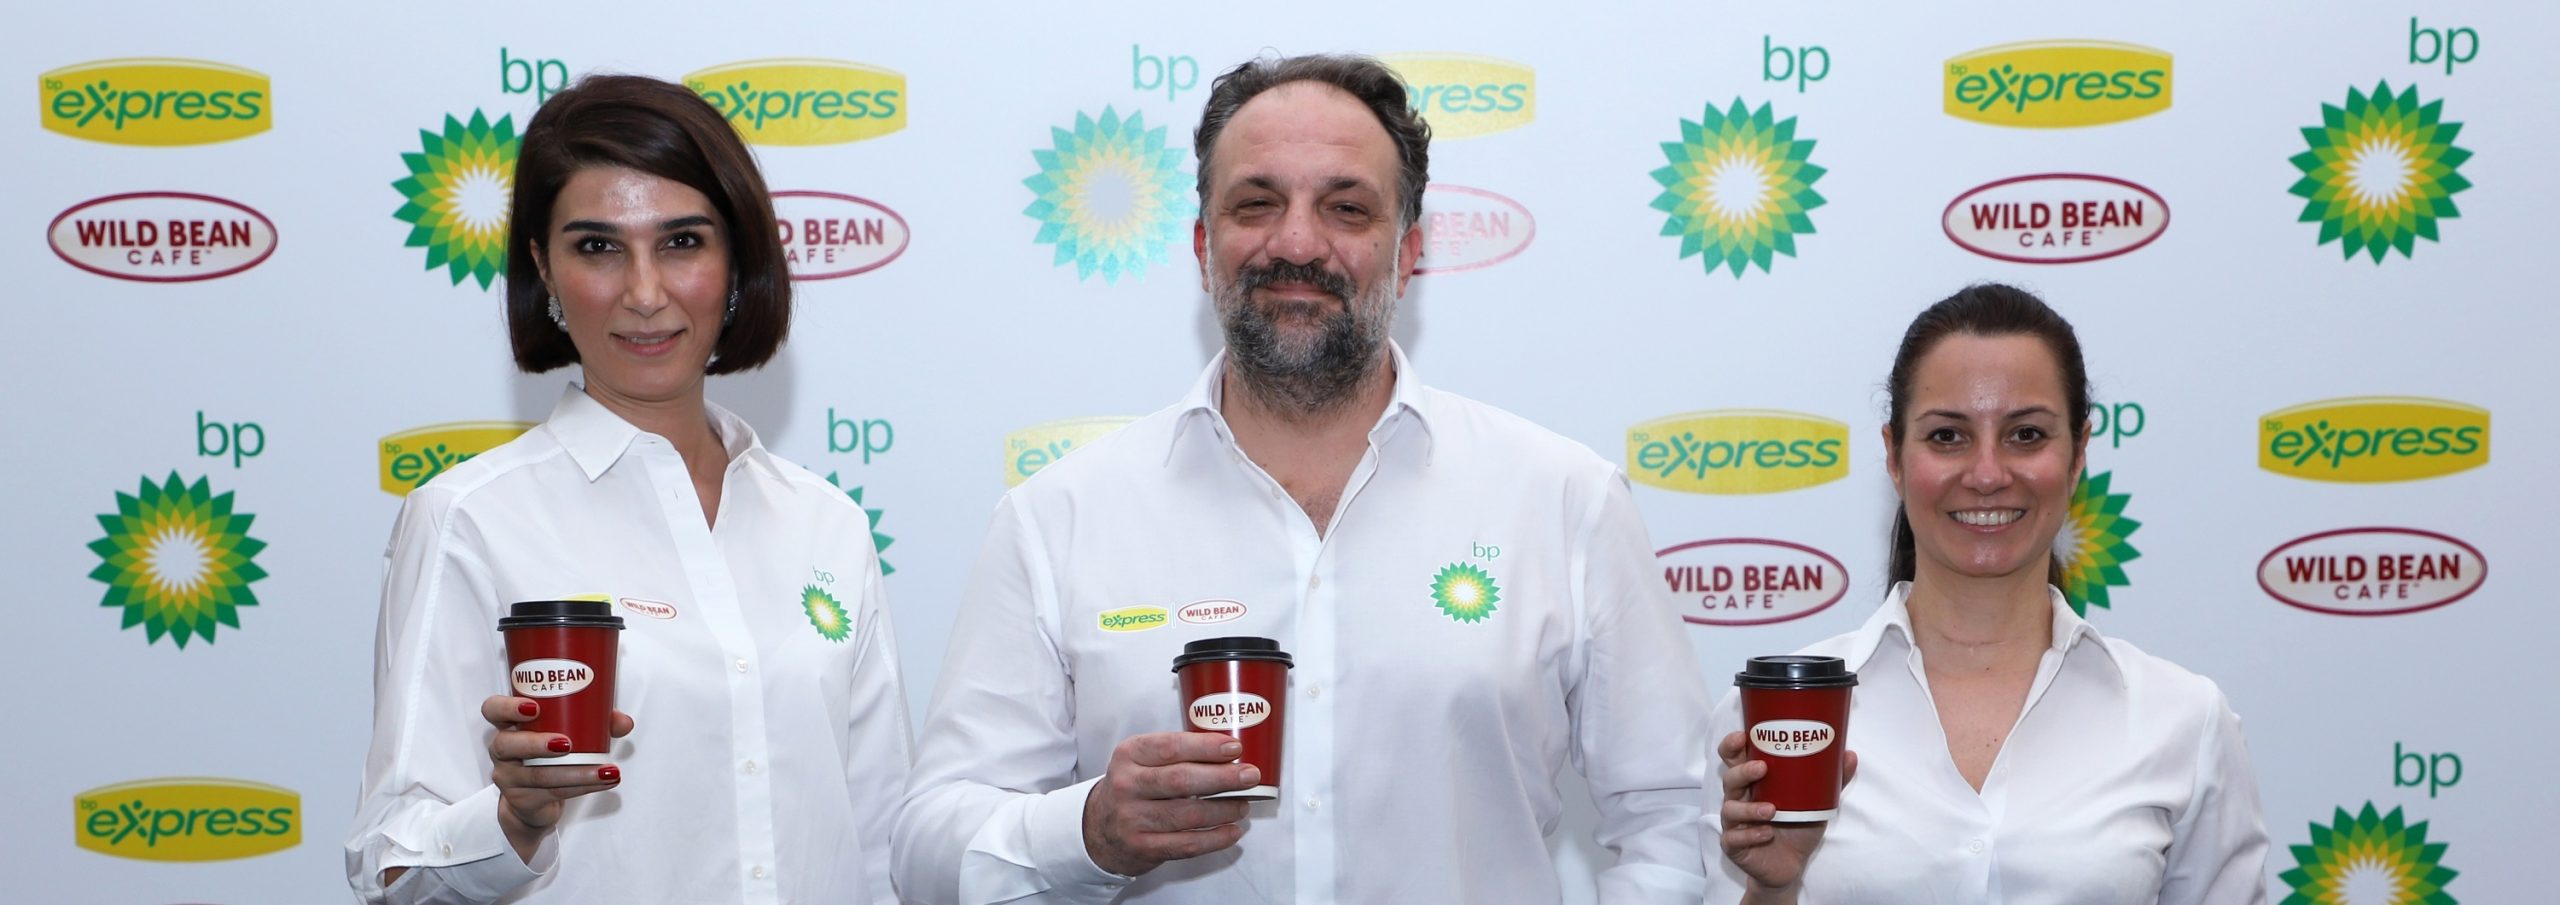 BP, sadece akaryakıt istasyonu değil müşteri odaklı perakende noktası olacak